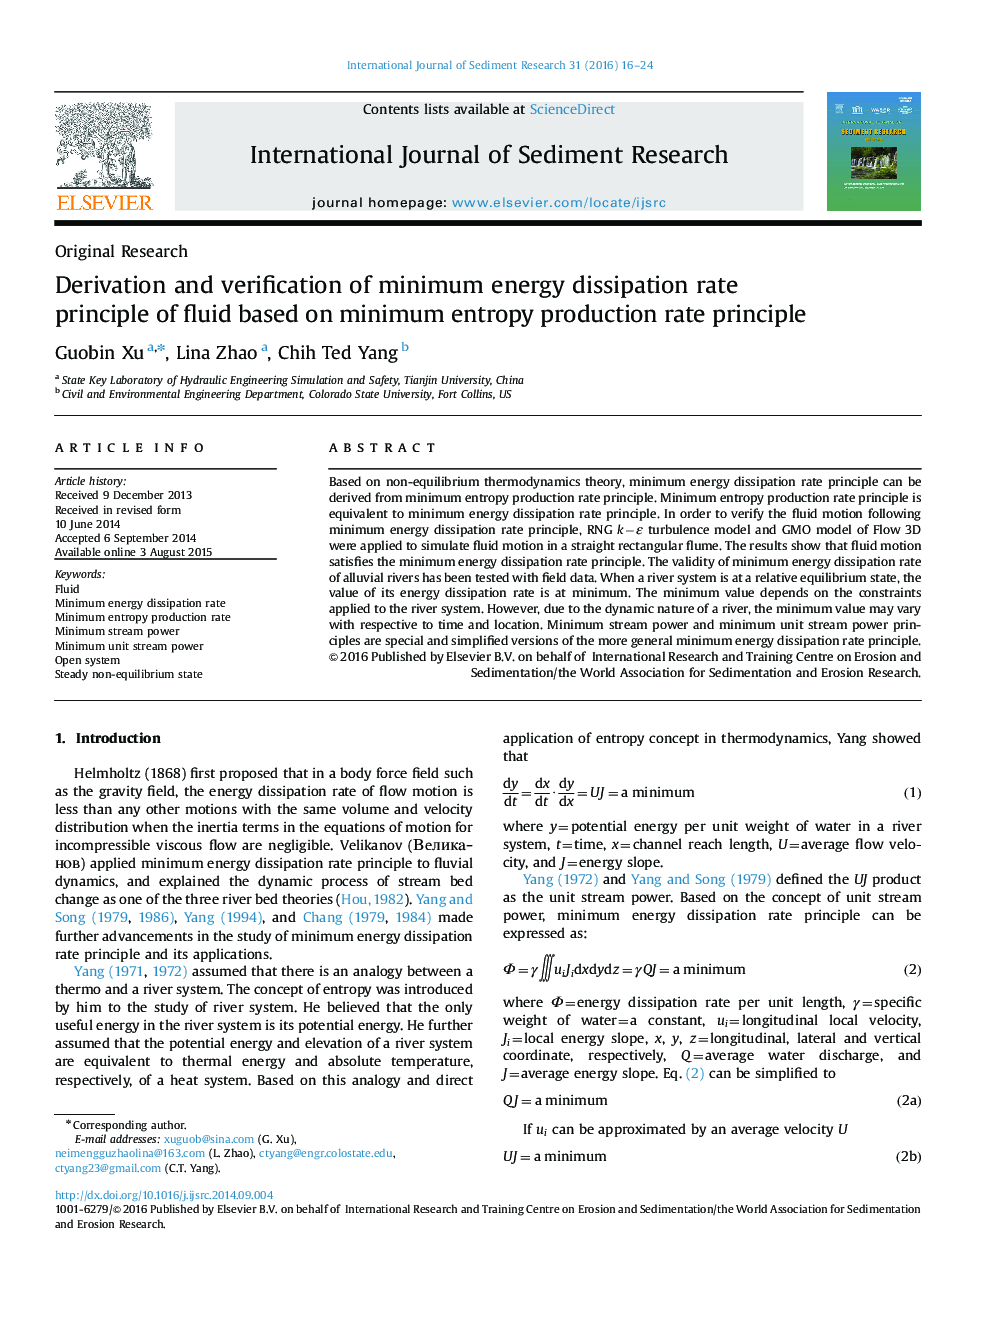 تشخیص و تایید اصل کمترین انرژی مایع انرژی مایع بر اساس حداقل نرخ تولید آنتروپی 